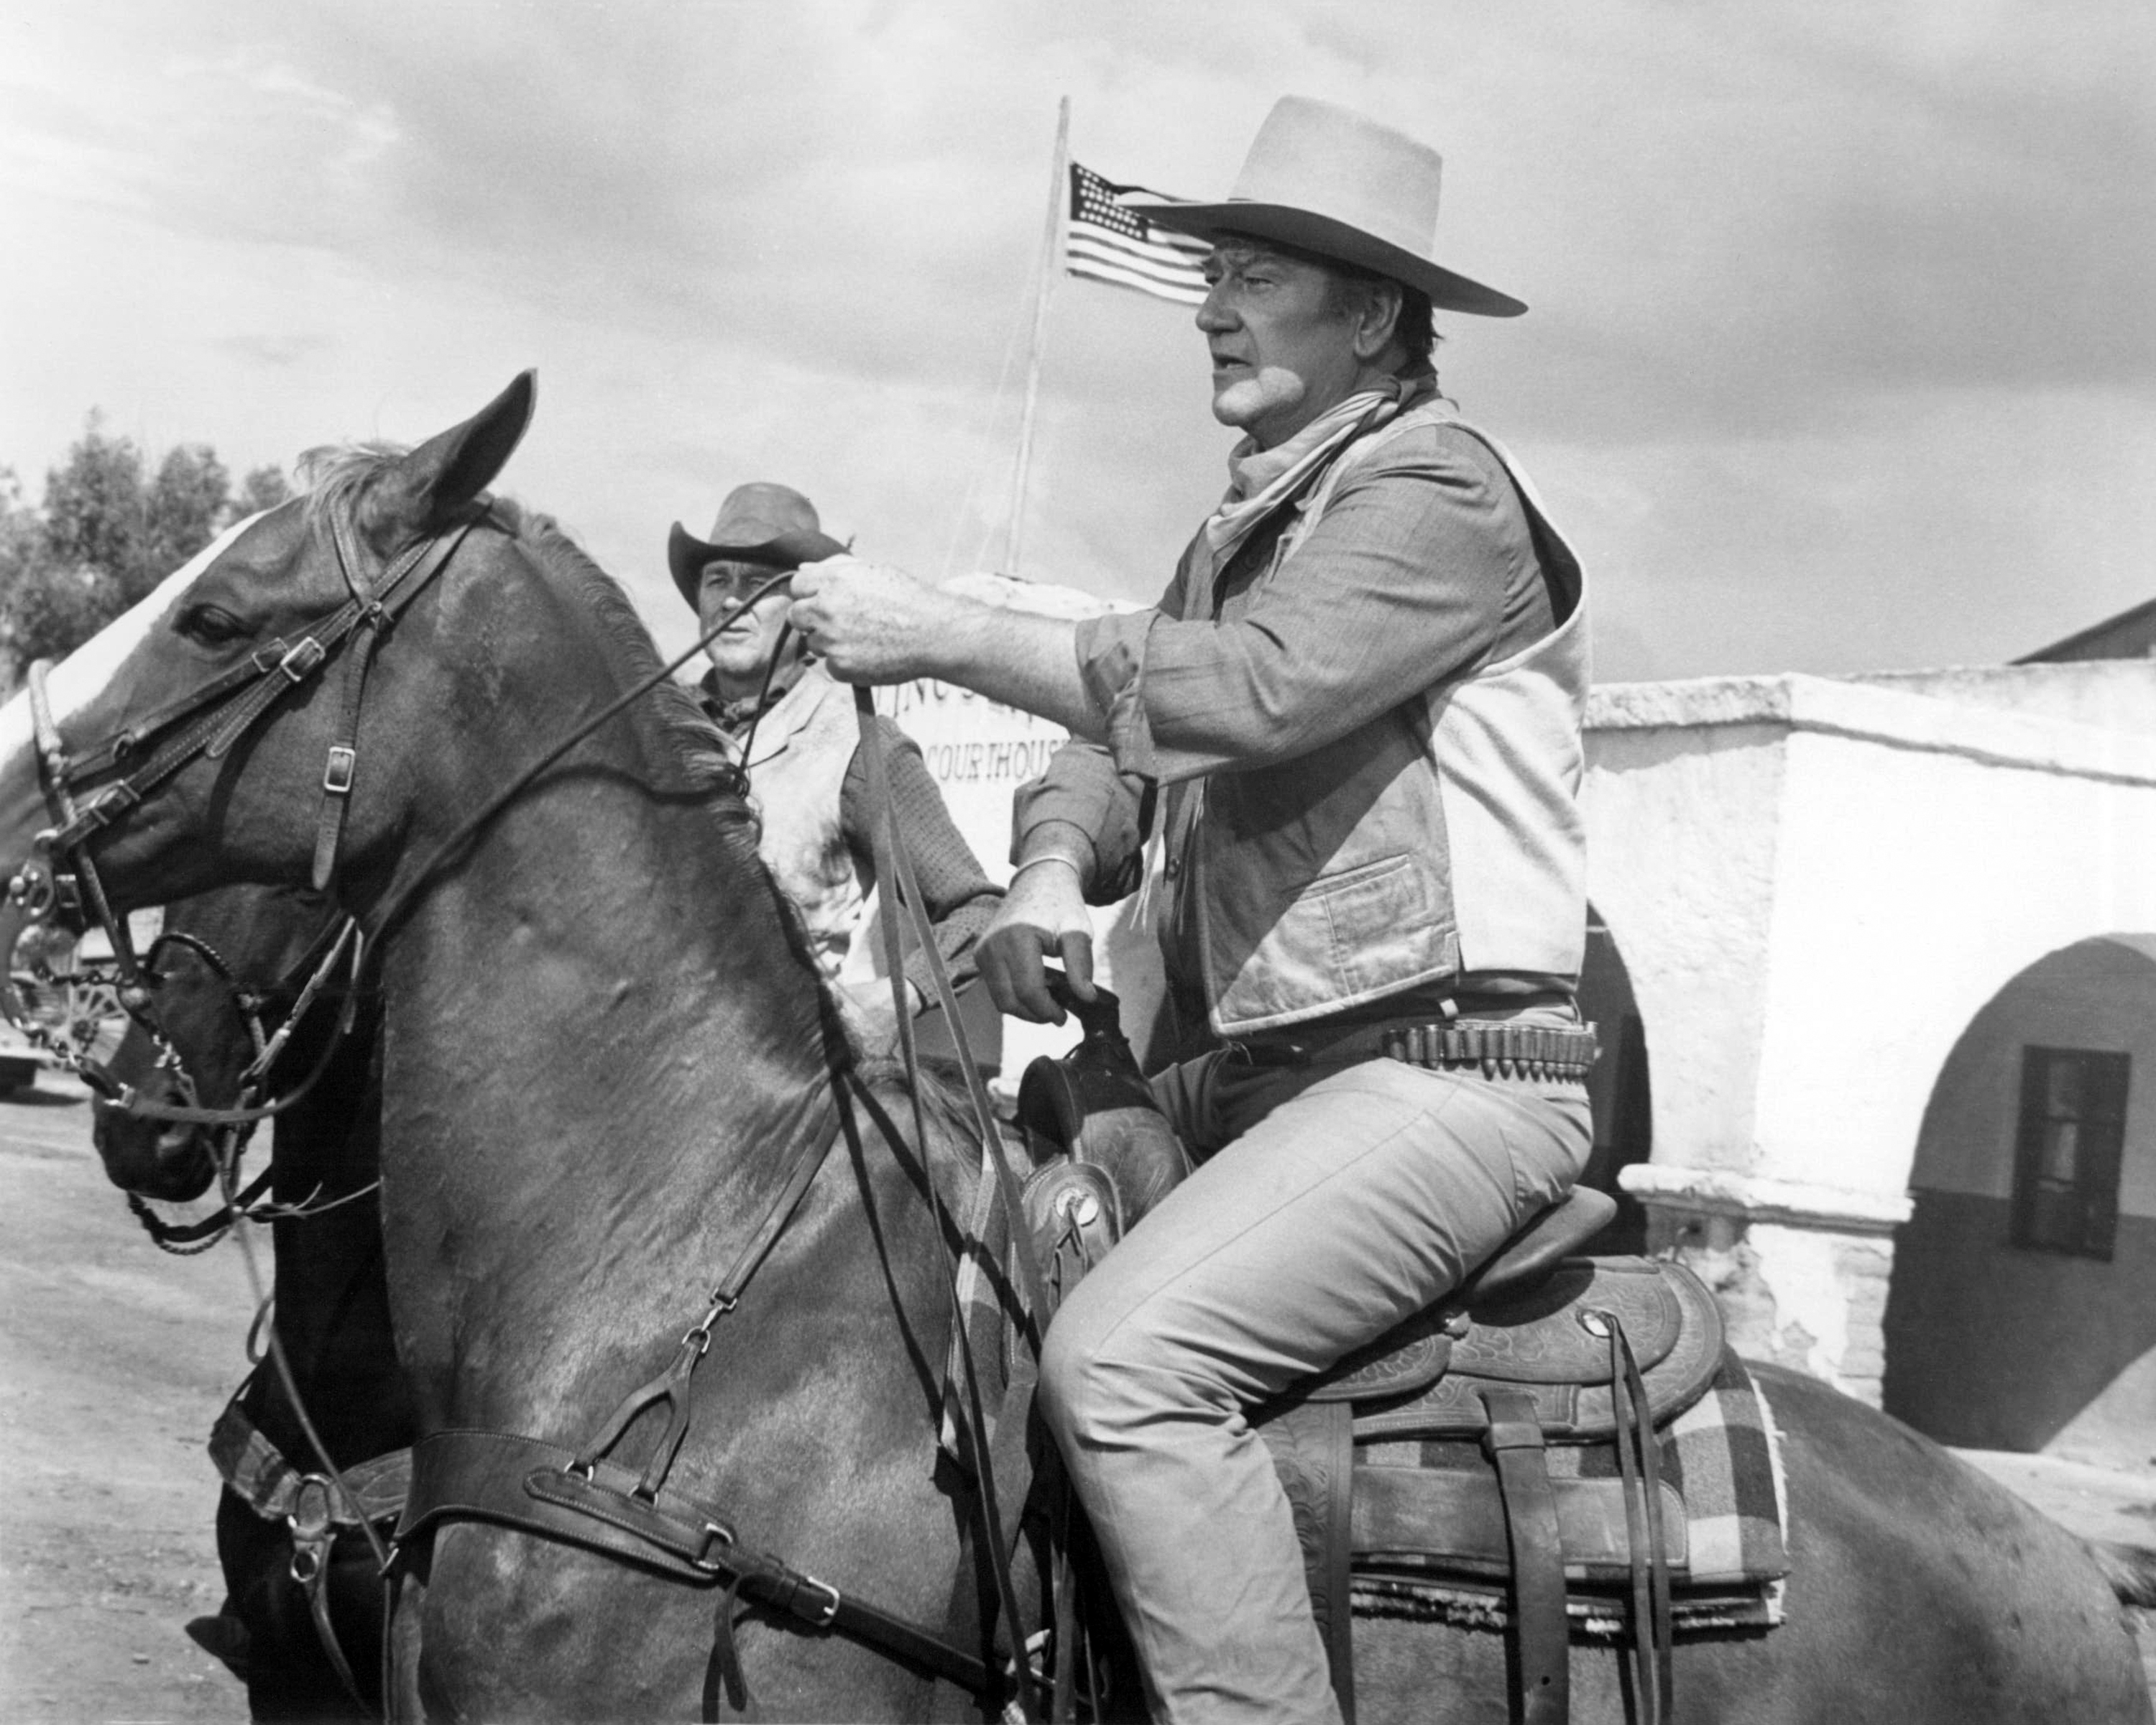 John Wayne on a horse